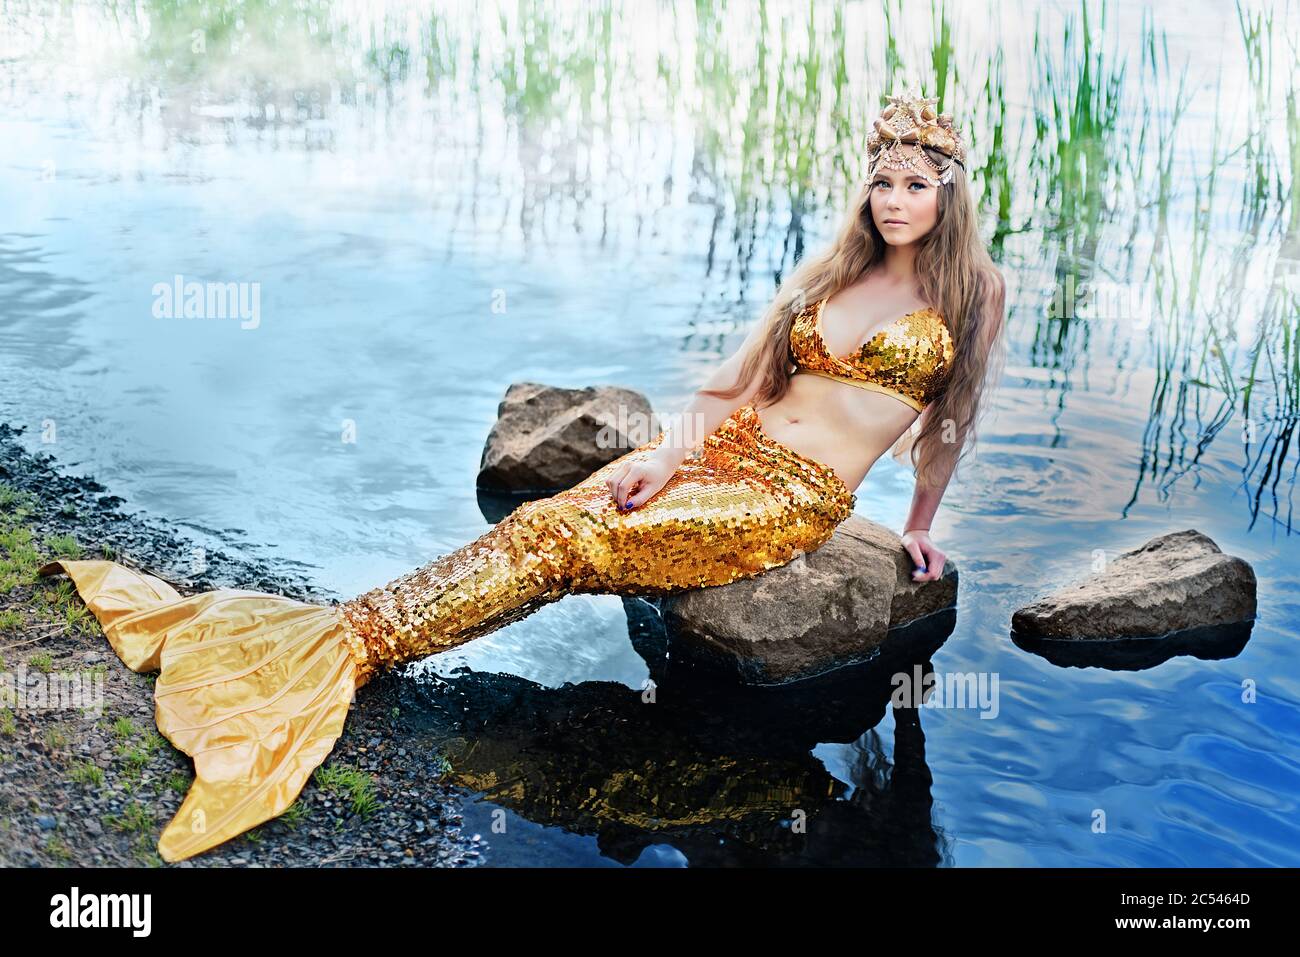 Fantasy Frau echte Meerjungfrau Mythos Göttin des Meeres mit goldenen  Schwanz sitzt in Sonnenuntergang auf Felsen.. Gold Haar Krone Muscheln  Perlen Schmuck. Meerjungfrau sitzt darauf Stockfotografie - Alamy